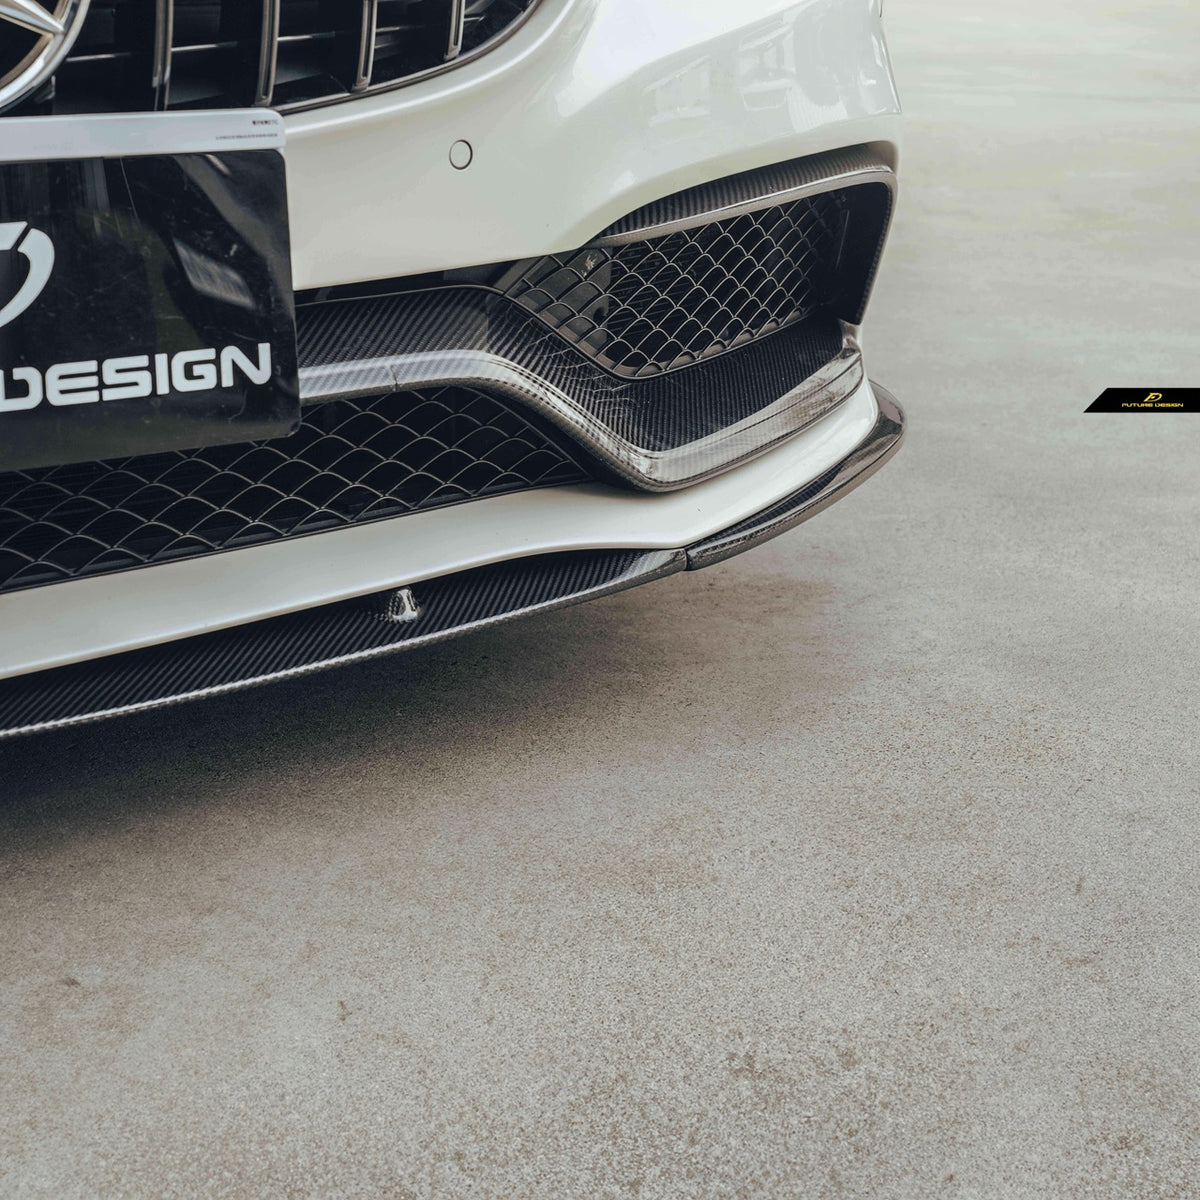 Future Design Carbon W205 C63 AMG Sedan / Coupe Carbon Fiber Front Can